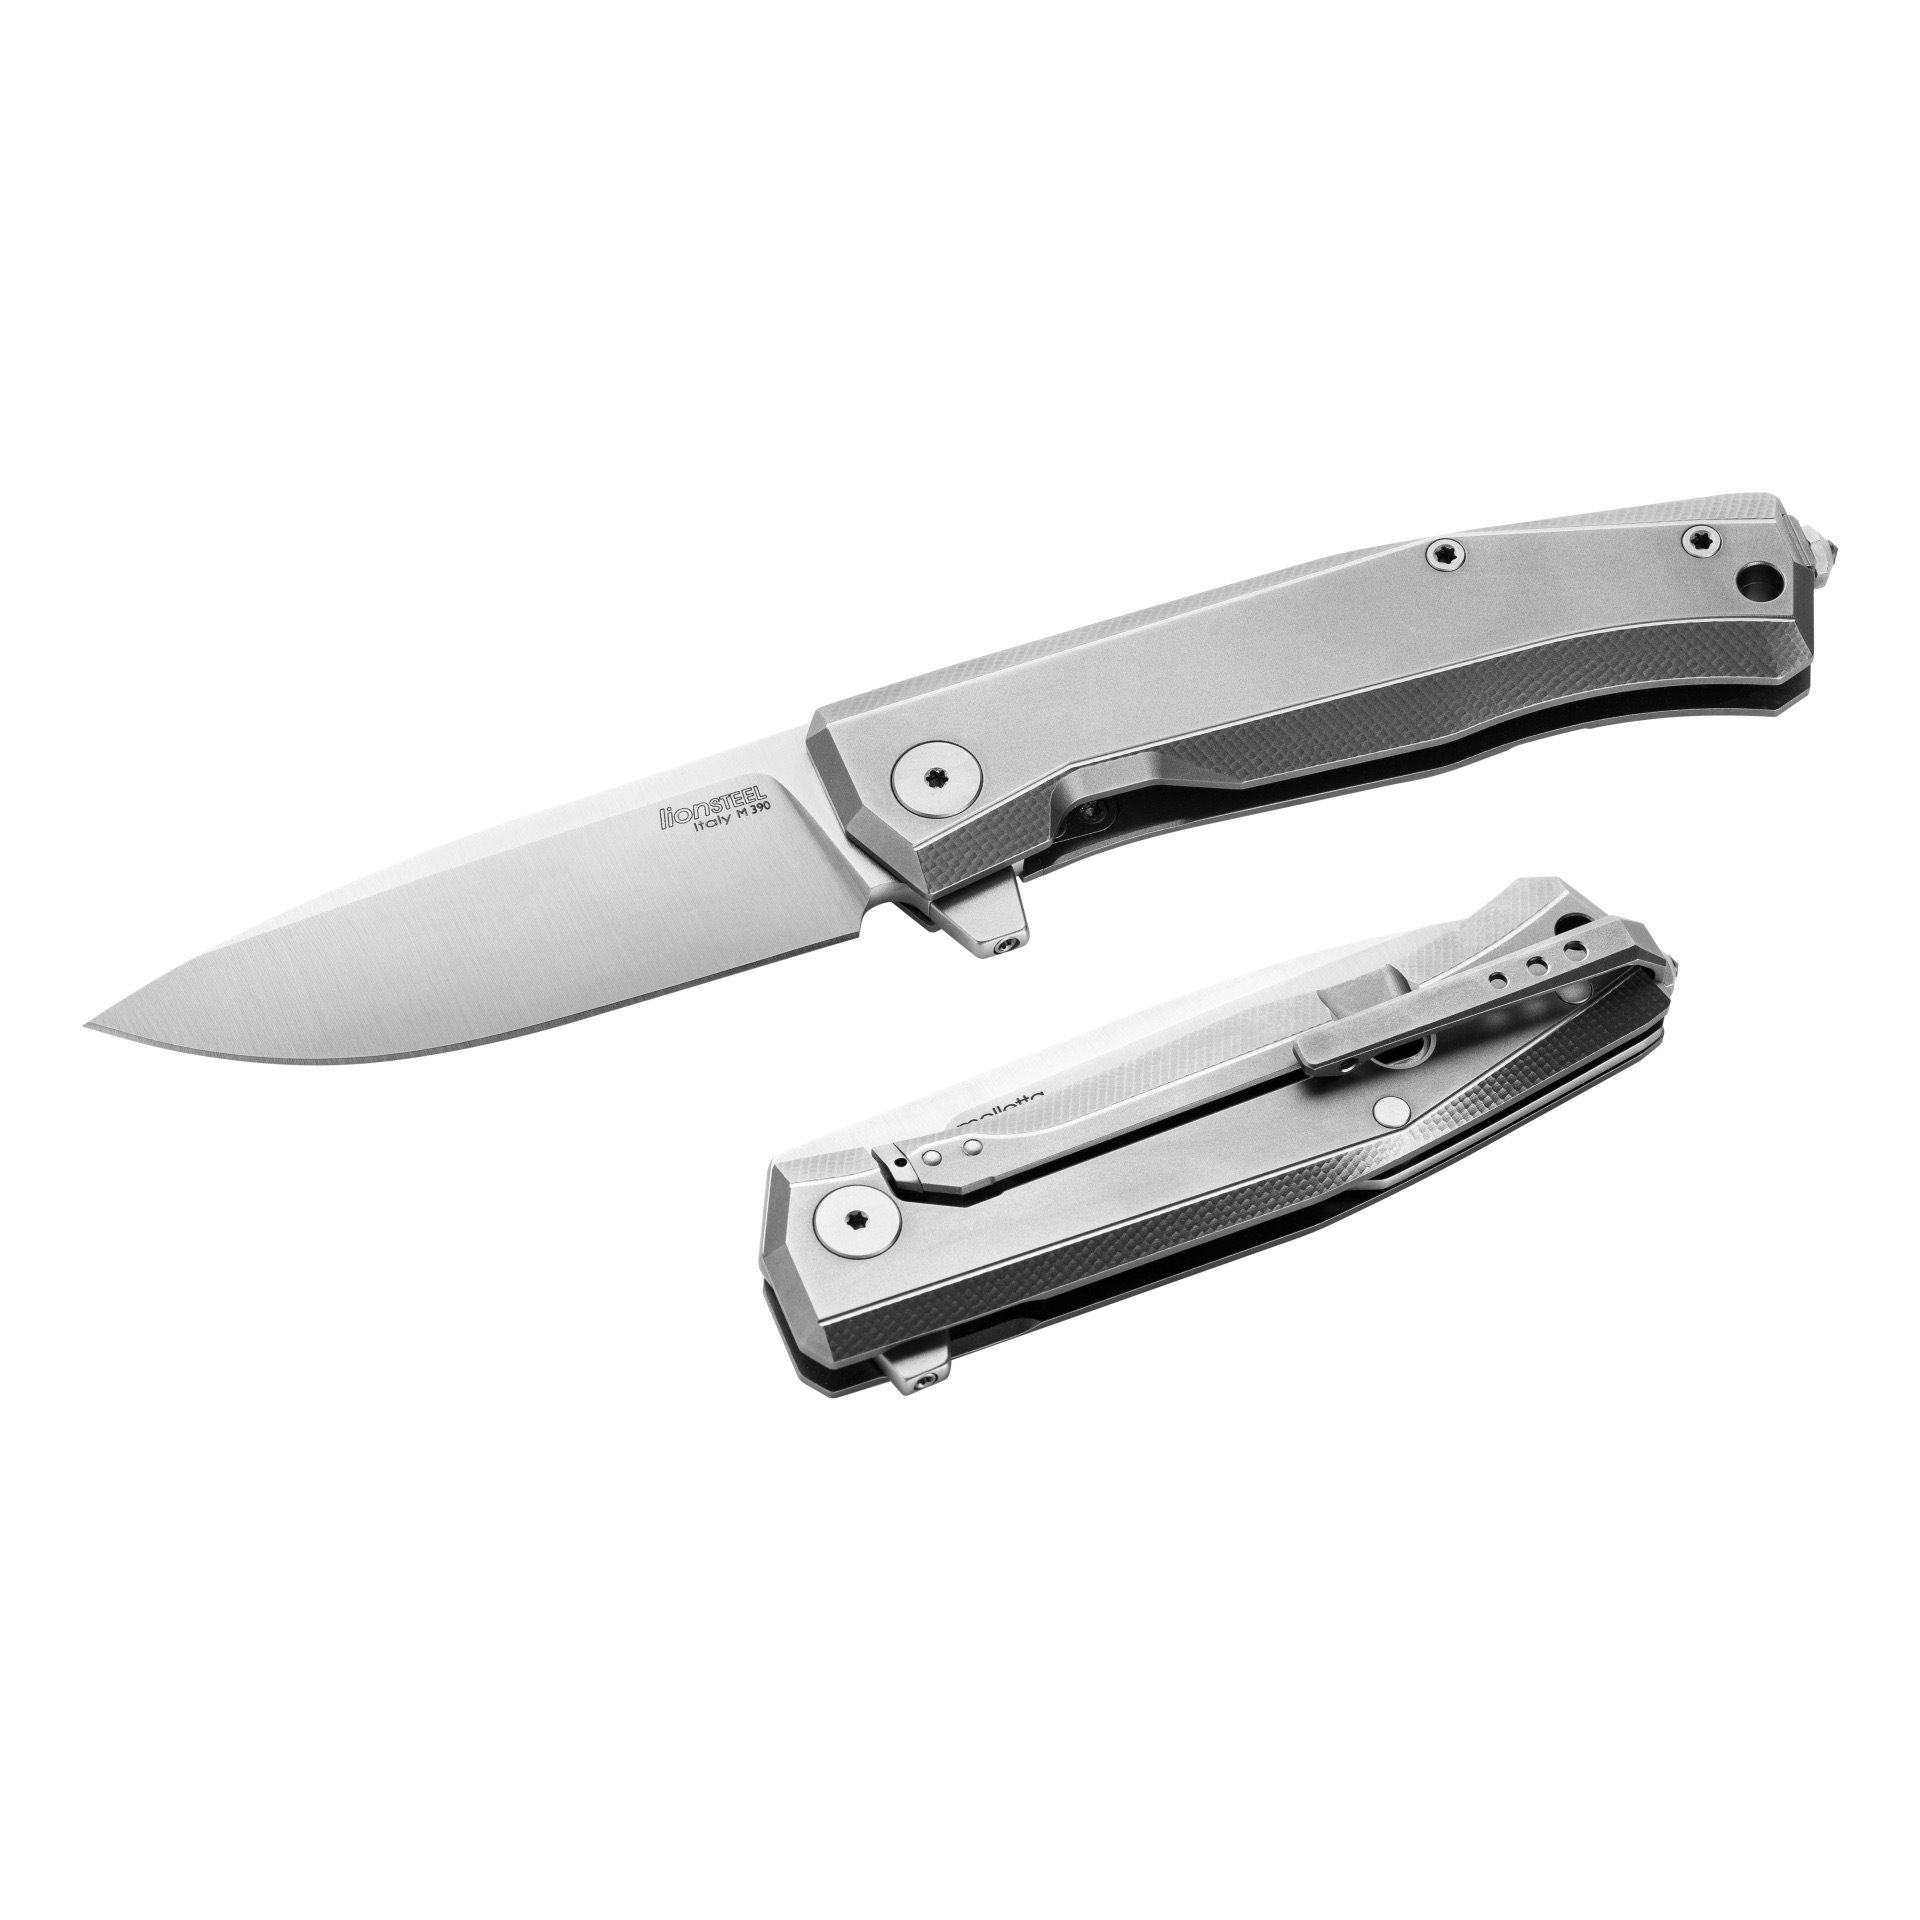 Складной нож LionSteel MT01 GY, сталь M390, рукоять Grey titanium